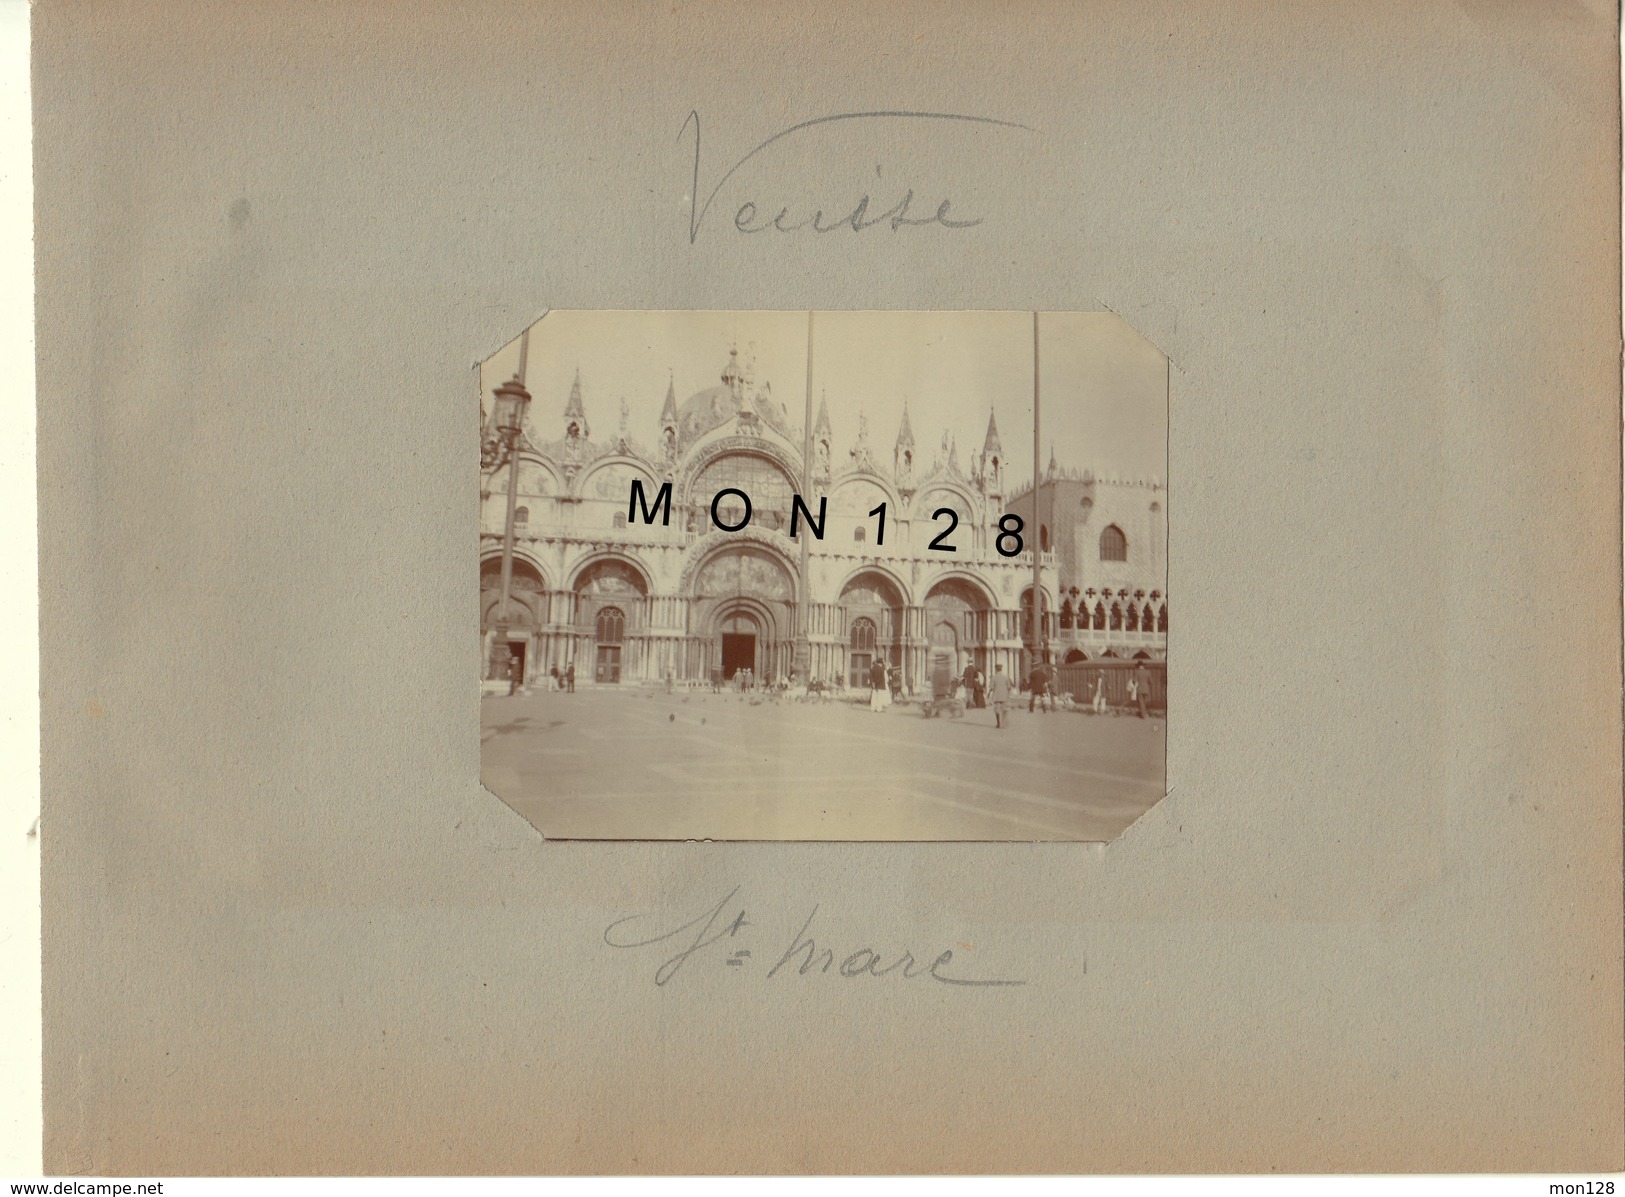 ITALIE-VENISE/VENEZIA -14 PHOTOS DIVERSES DE 1909 -DIM 10x8 cms -PHOTOS D'EPOQUE NON COLLEES (pages d'un album ancien)